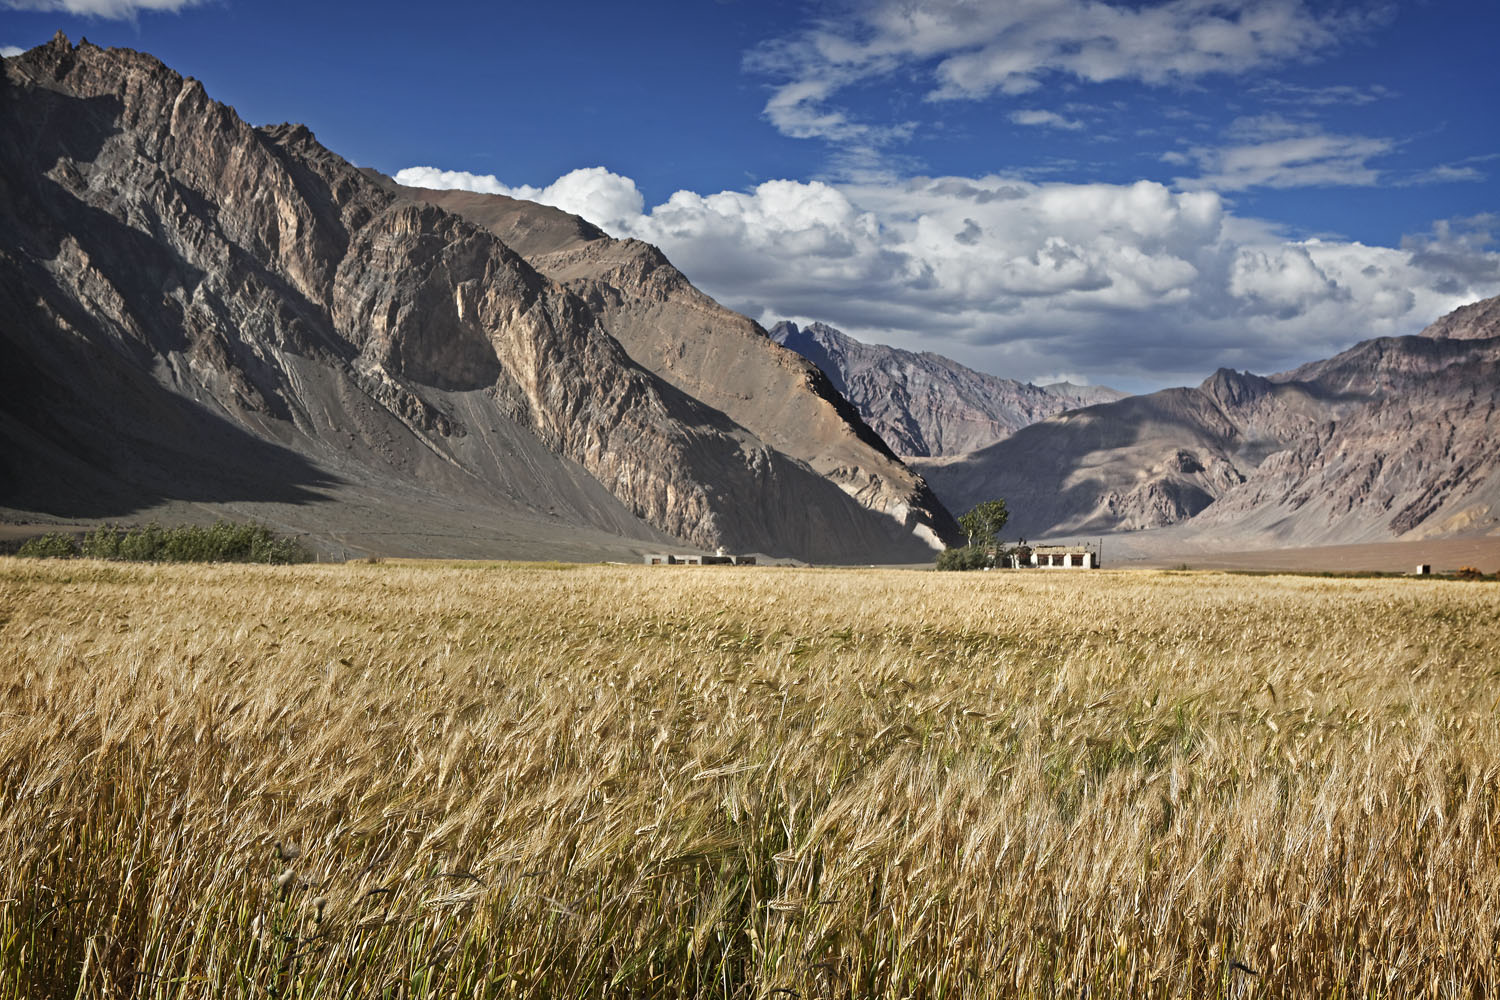 Barley fields, Stongde, Zanskar, India